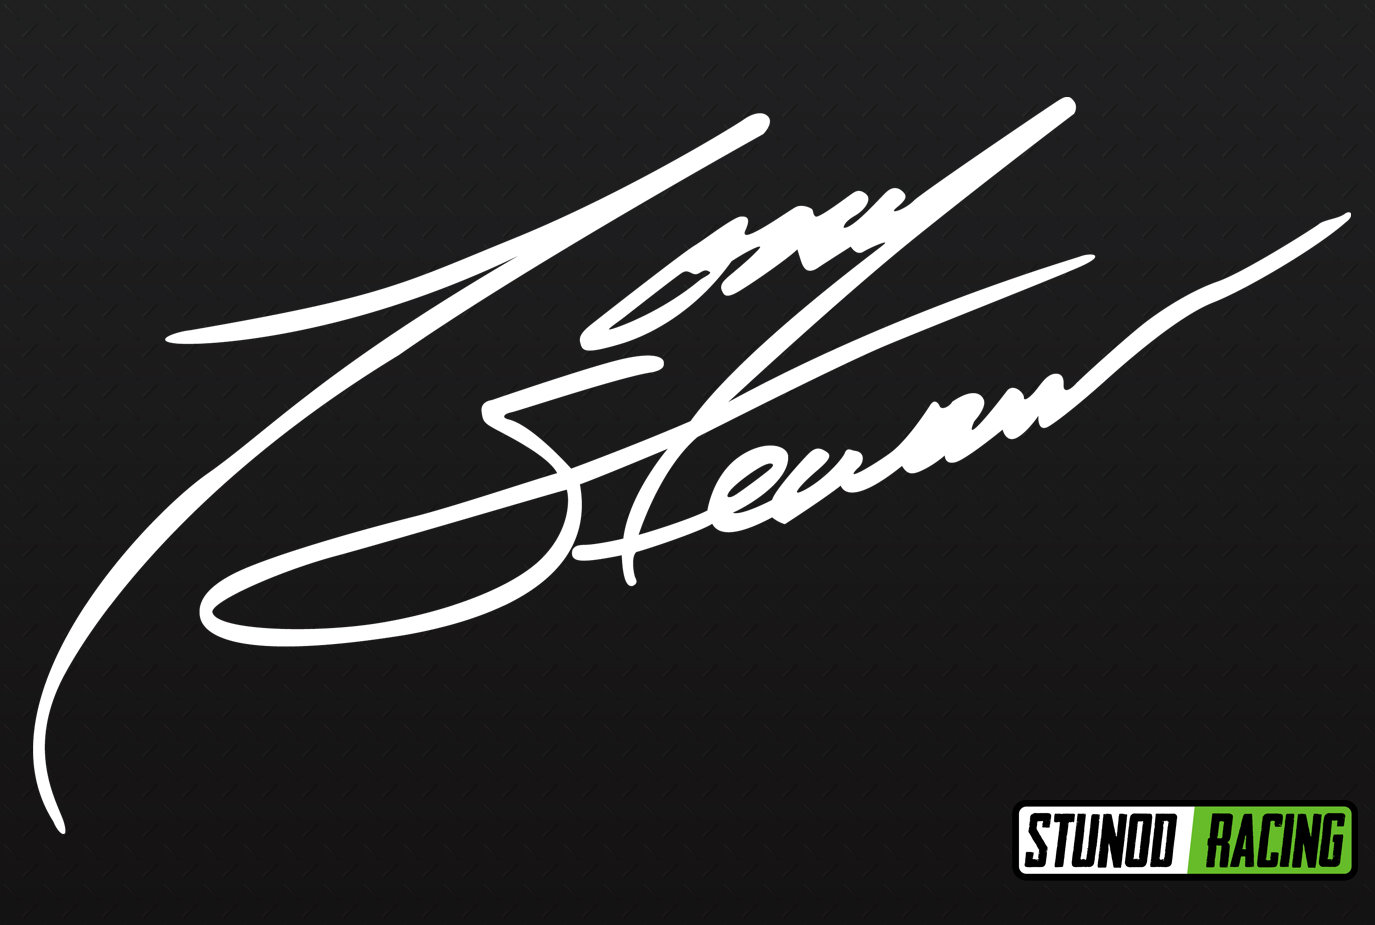 StunodRacing-Tony-Stewart-Signature.jpg